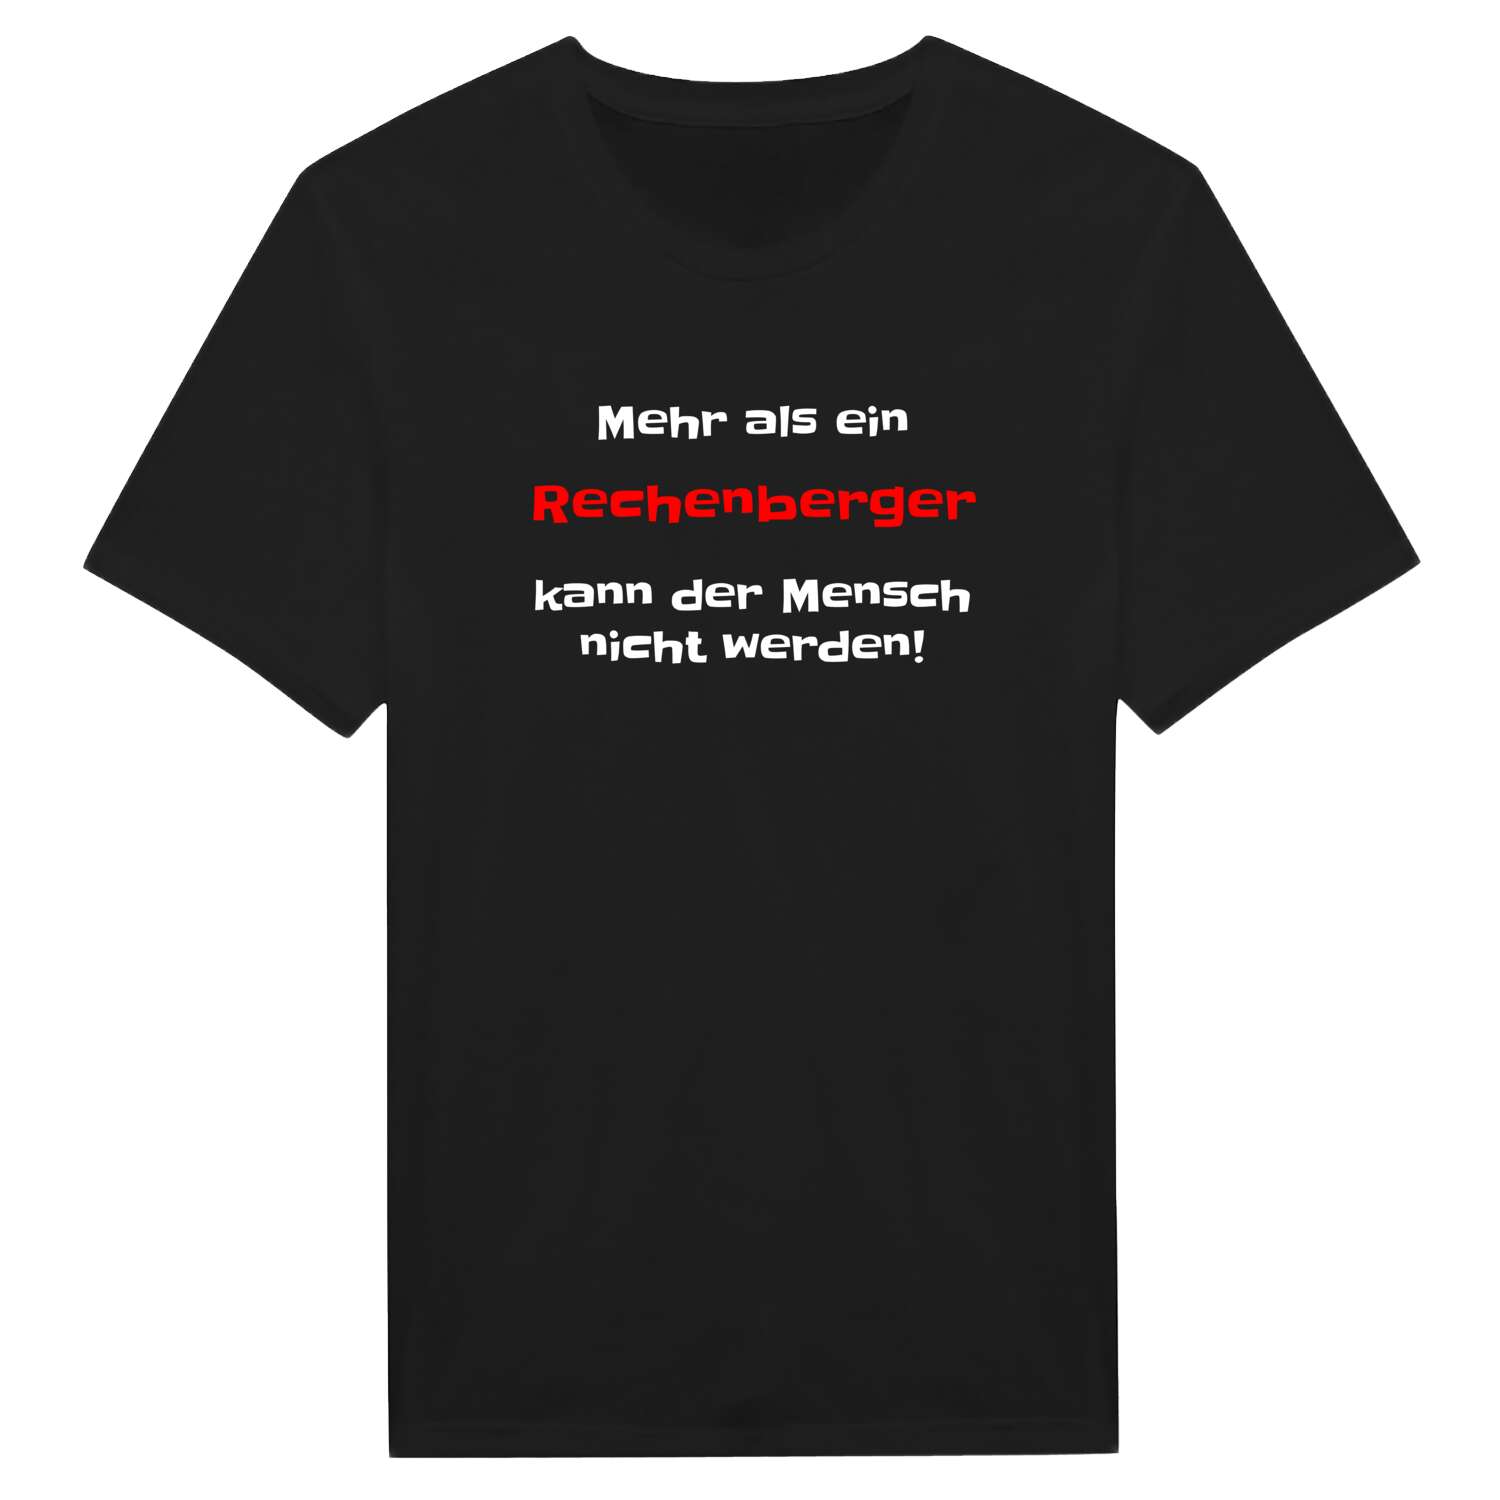 Rechenberg T-Shirt »Mehr als ein«